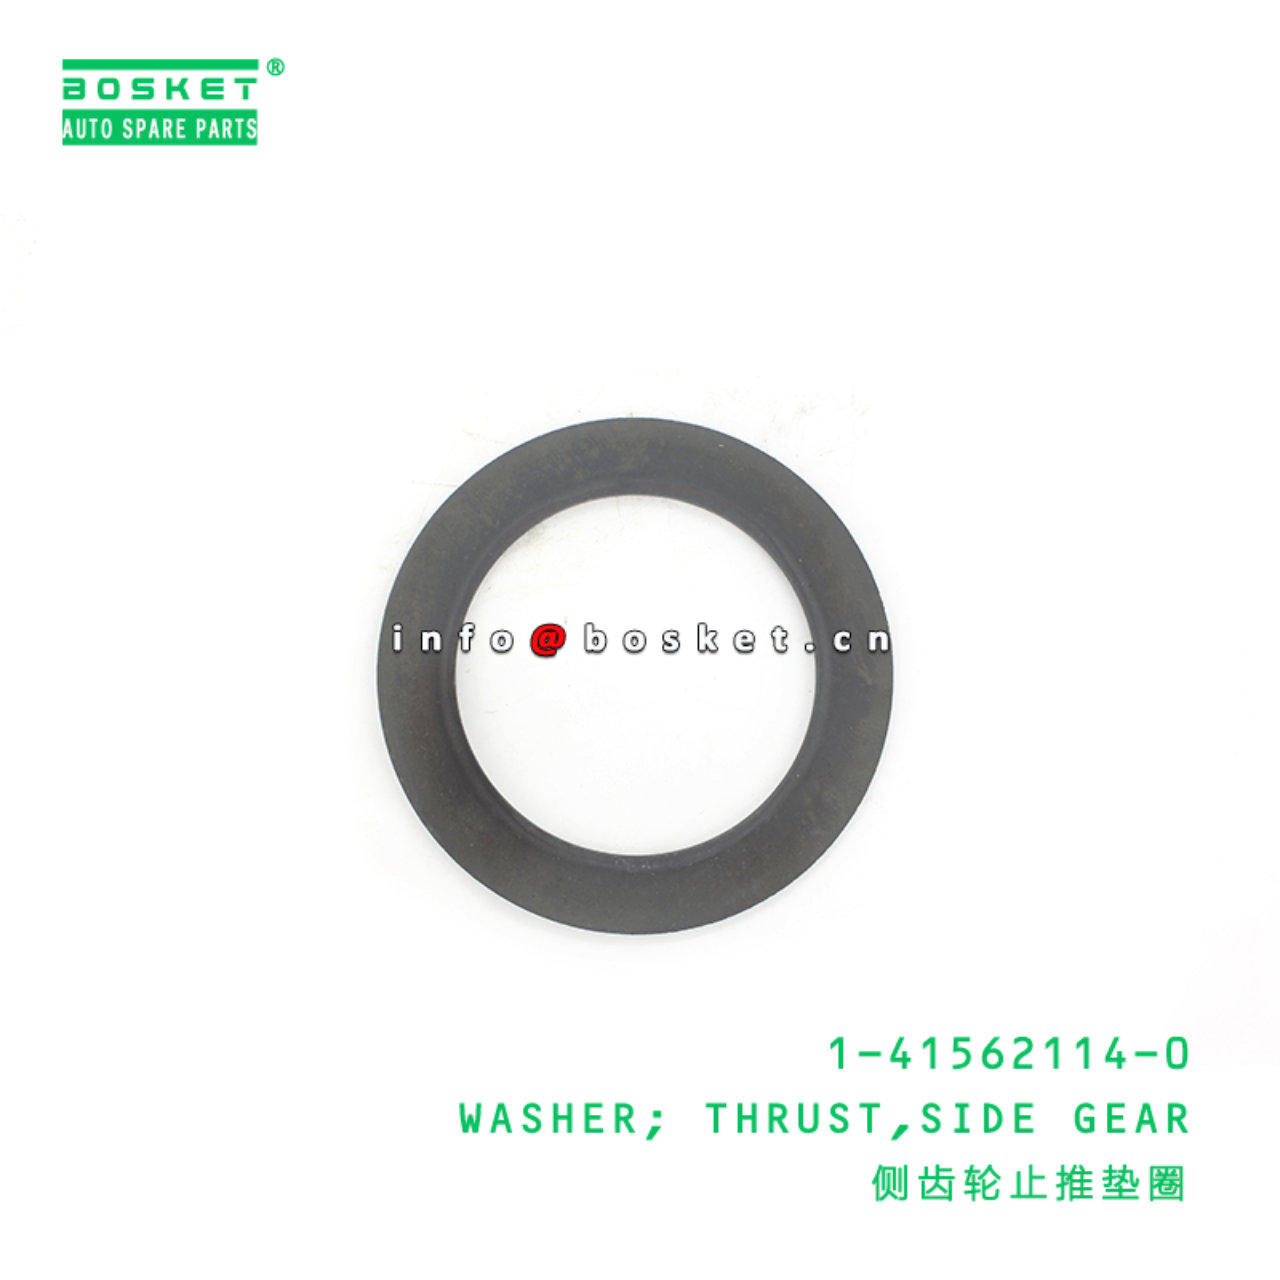 1-41562114-0 Side Gear Thrust Washer 1415621140 Suitable for ISUZU 